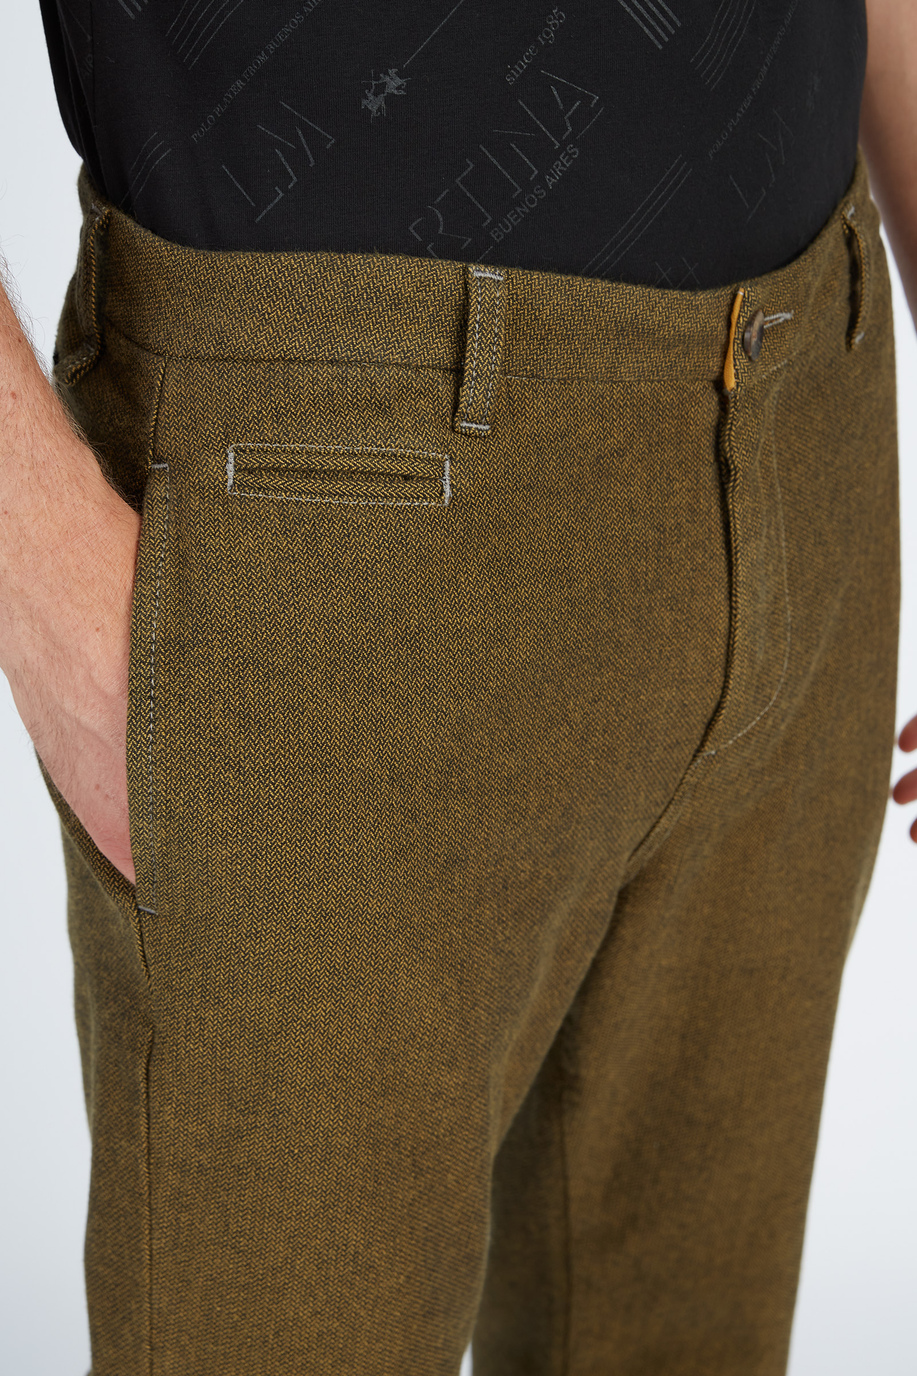 Pantalon homme modèle 5 poches en coton coupe régulière - Tenues d'hiver pour lui | La Martina - Official Online Shop